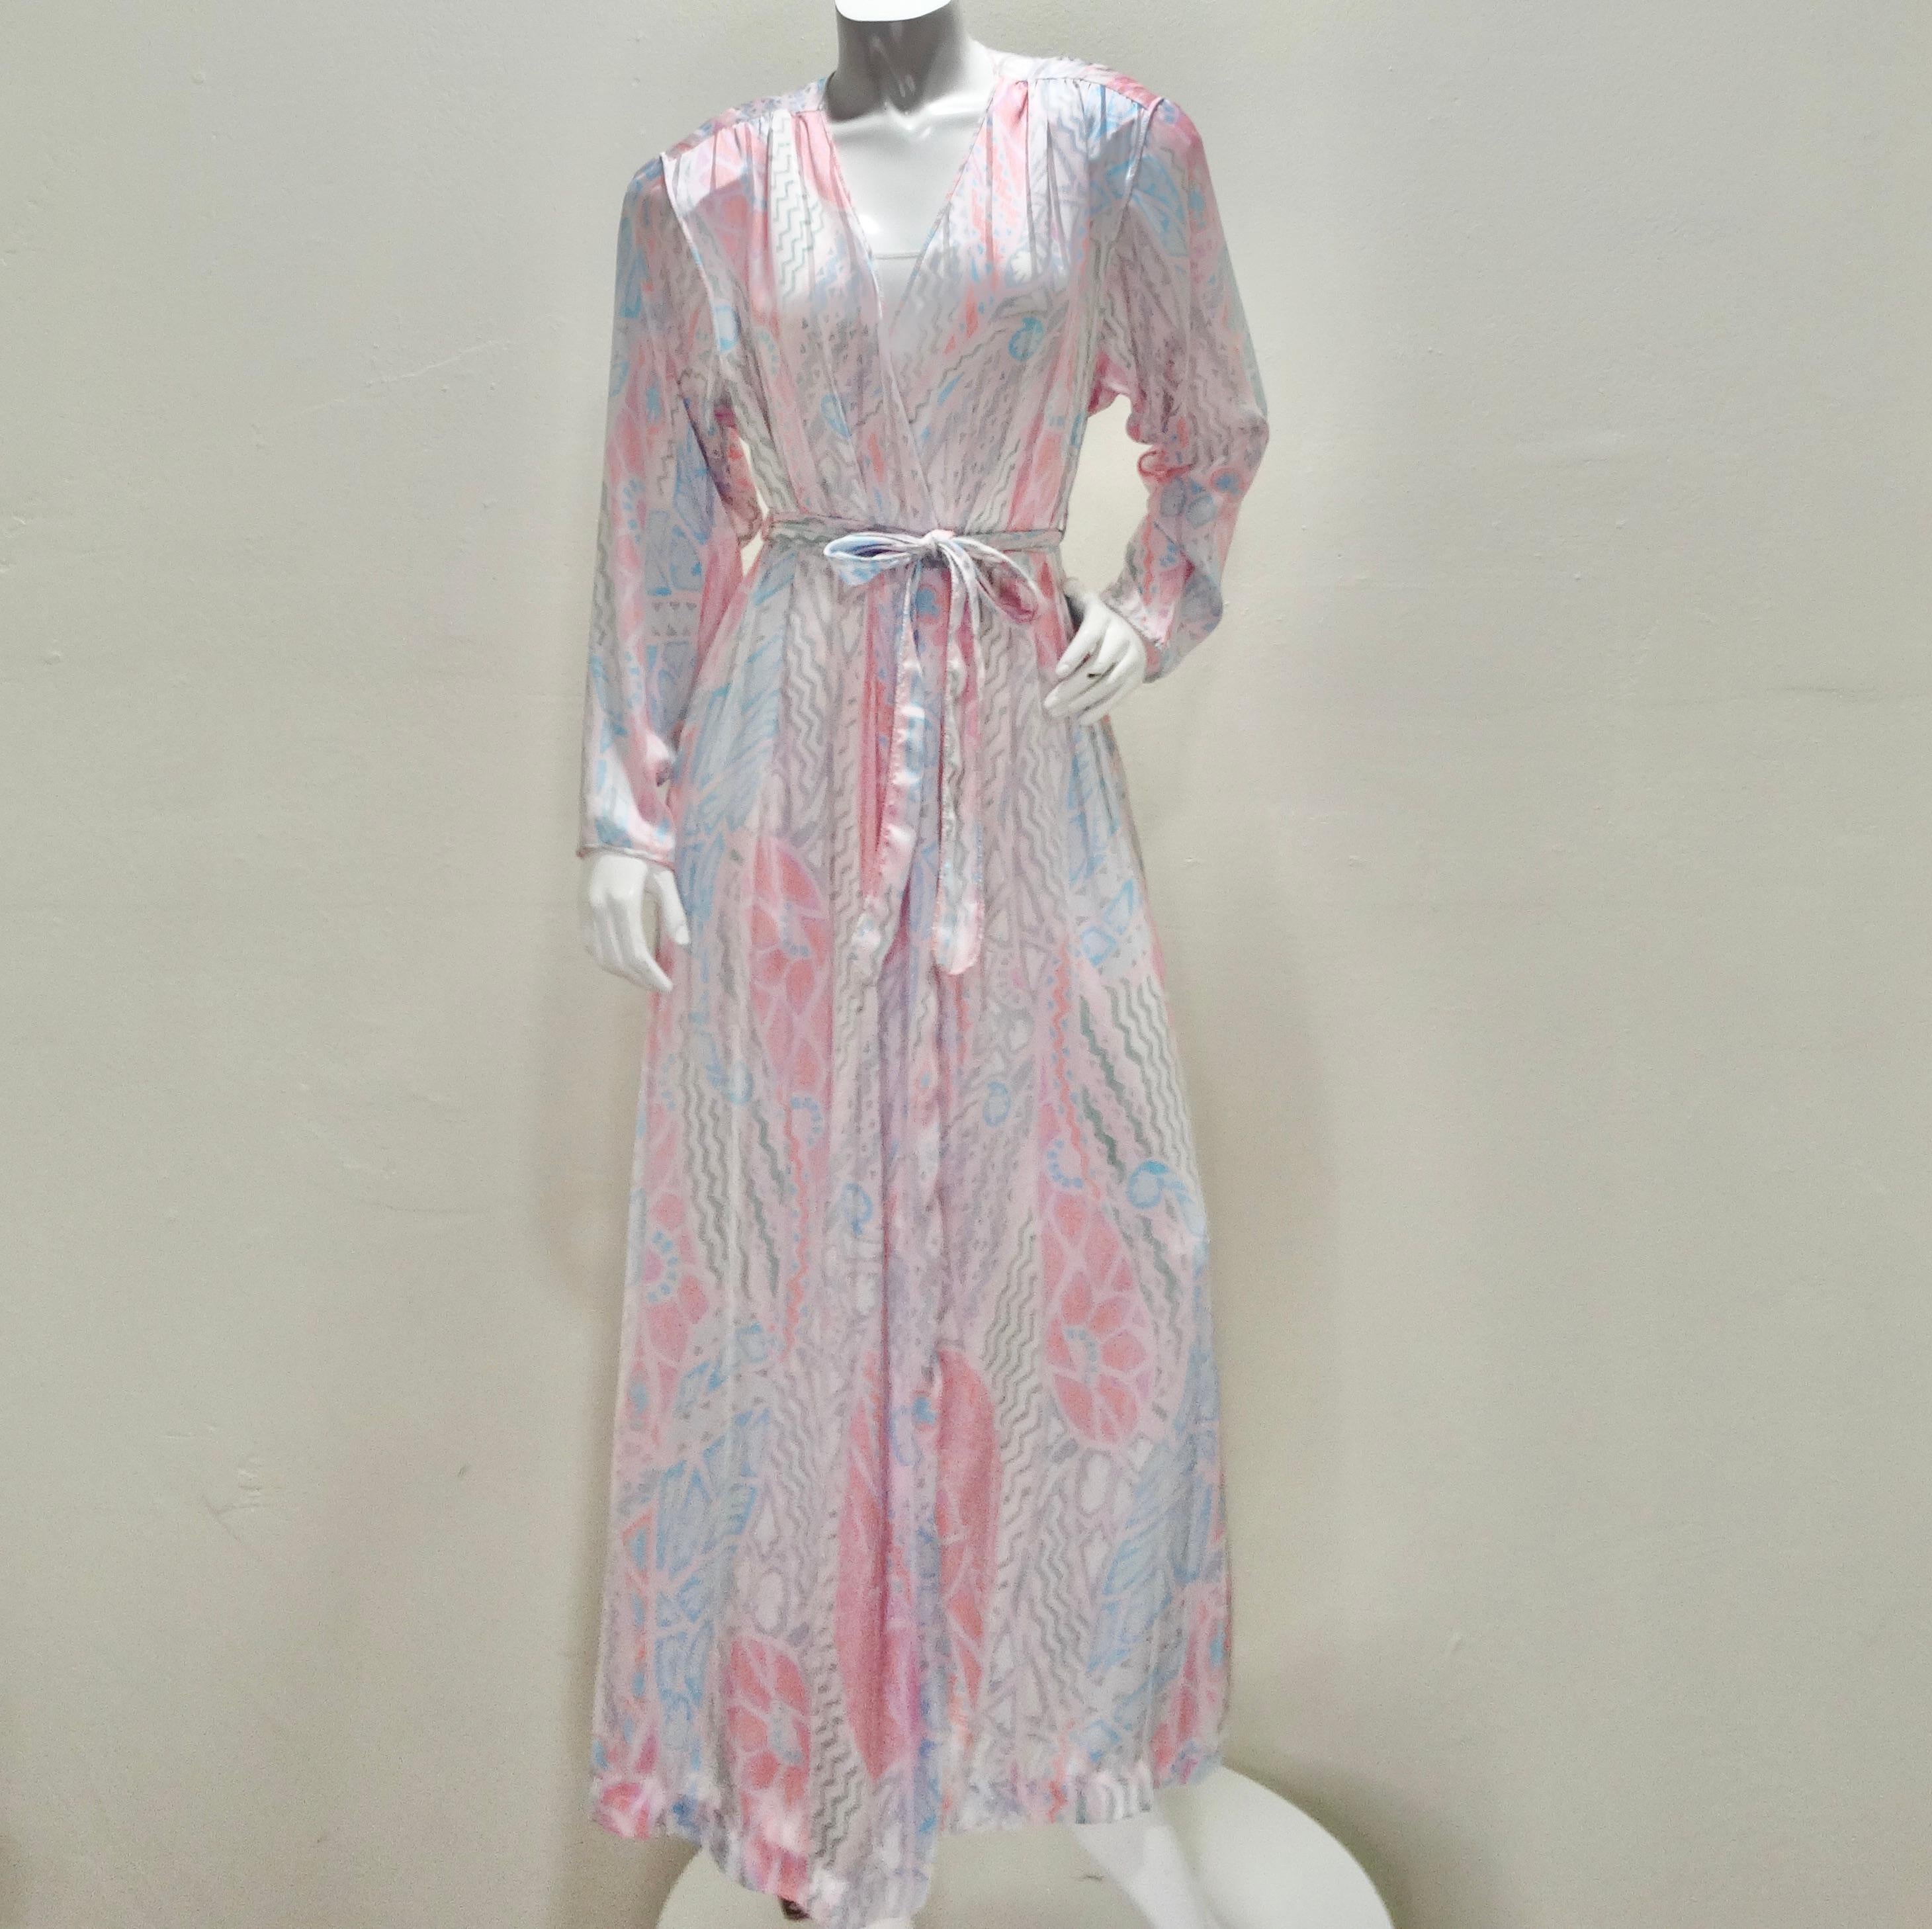 Entdecken Sie Eleganz und Raffinesse mit der bedruckten Robe von Mary McFadden aus den 1980er Jahren - ein wahres Schmuckstück aus einer vergangenen Ära. Diese exquisite Robe, die von Mary McFadden entworfen wurde, besticht durch zeitlose Schönheit